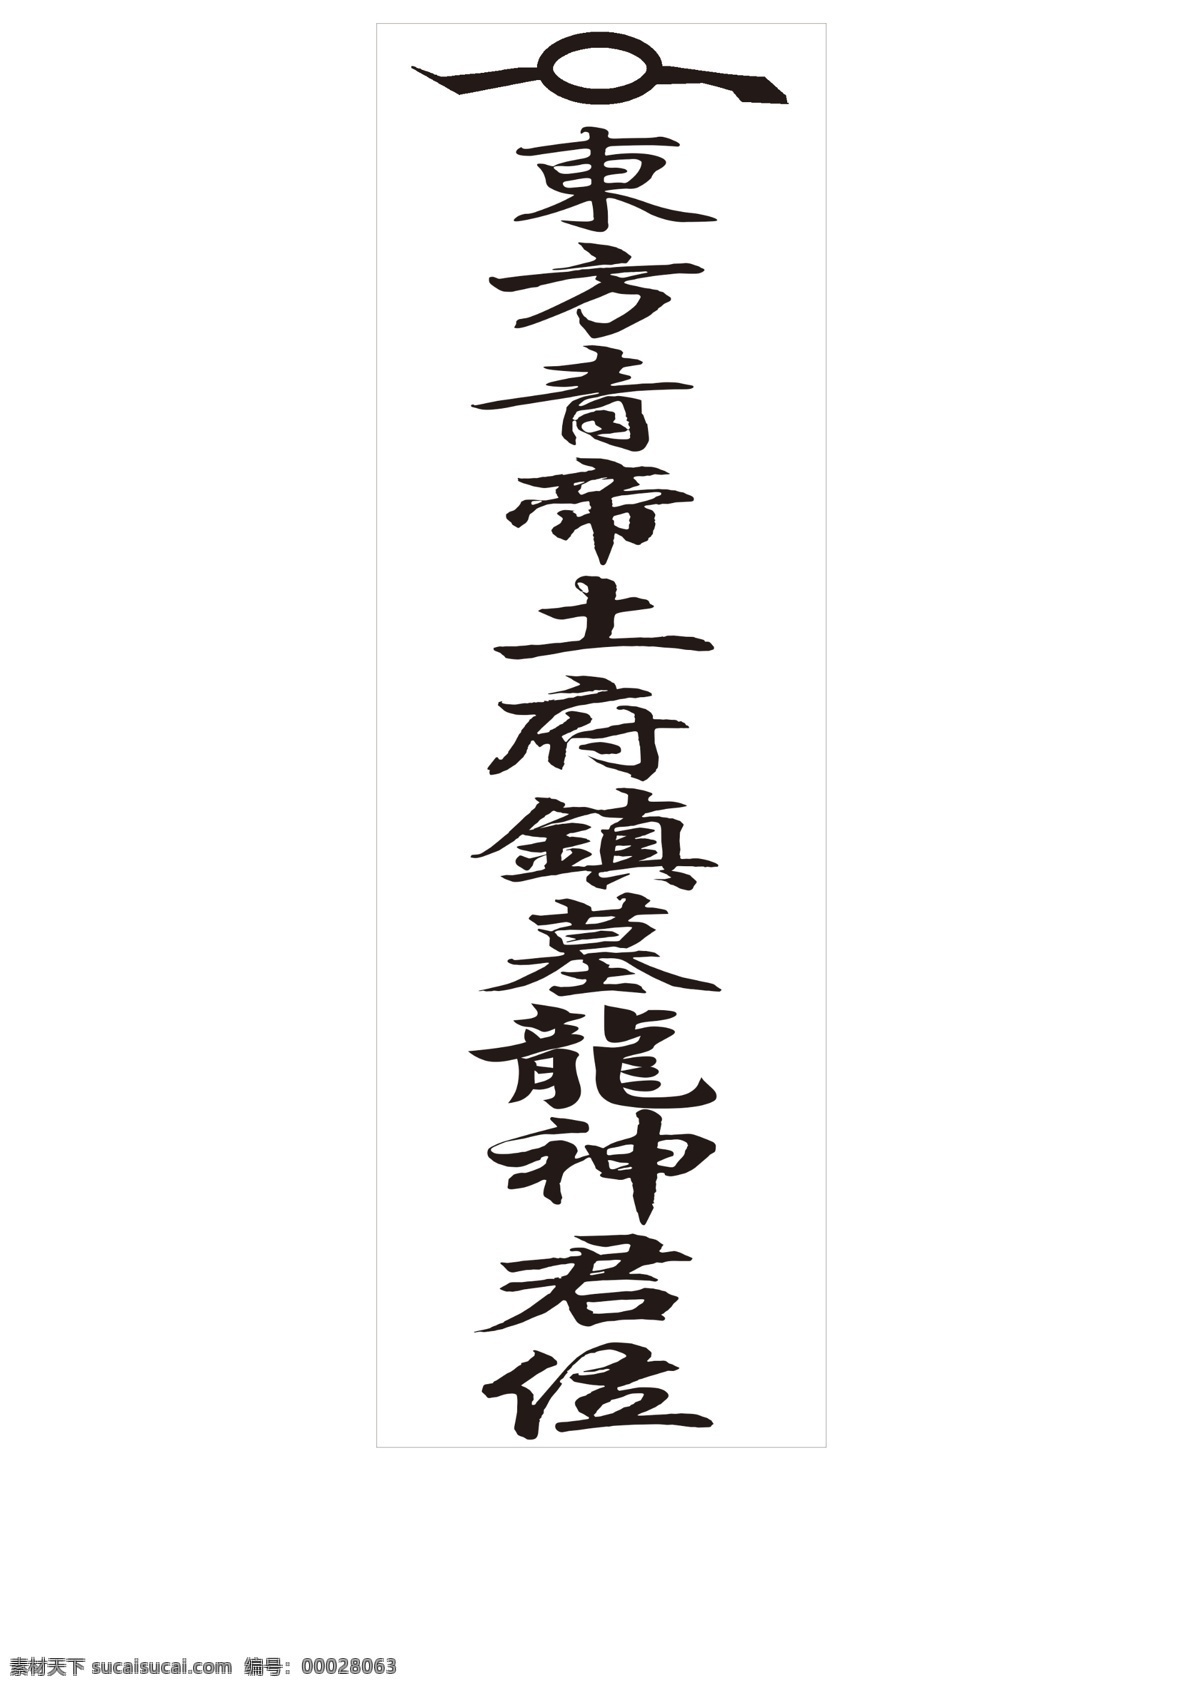 东方牌位 牌位 民间风俗 非物质文化 东方 神龙 阴阳道士风水 文化艺术 传统文化